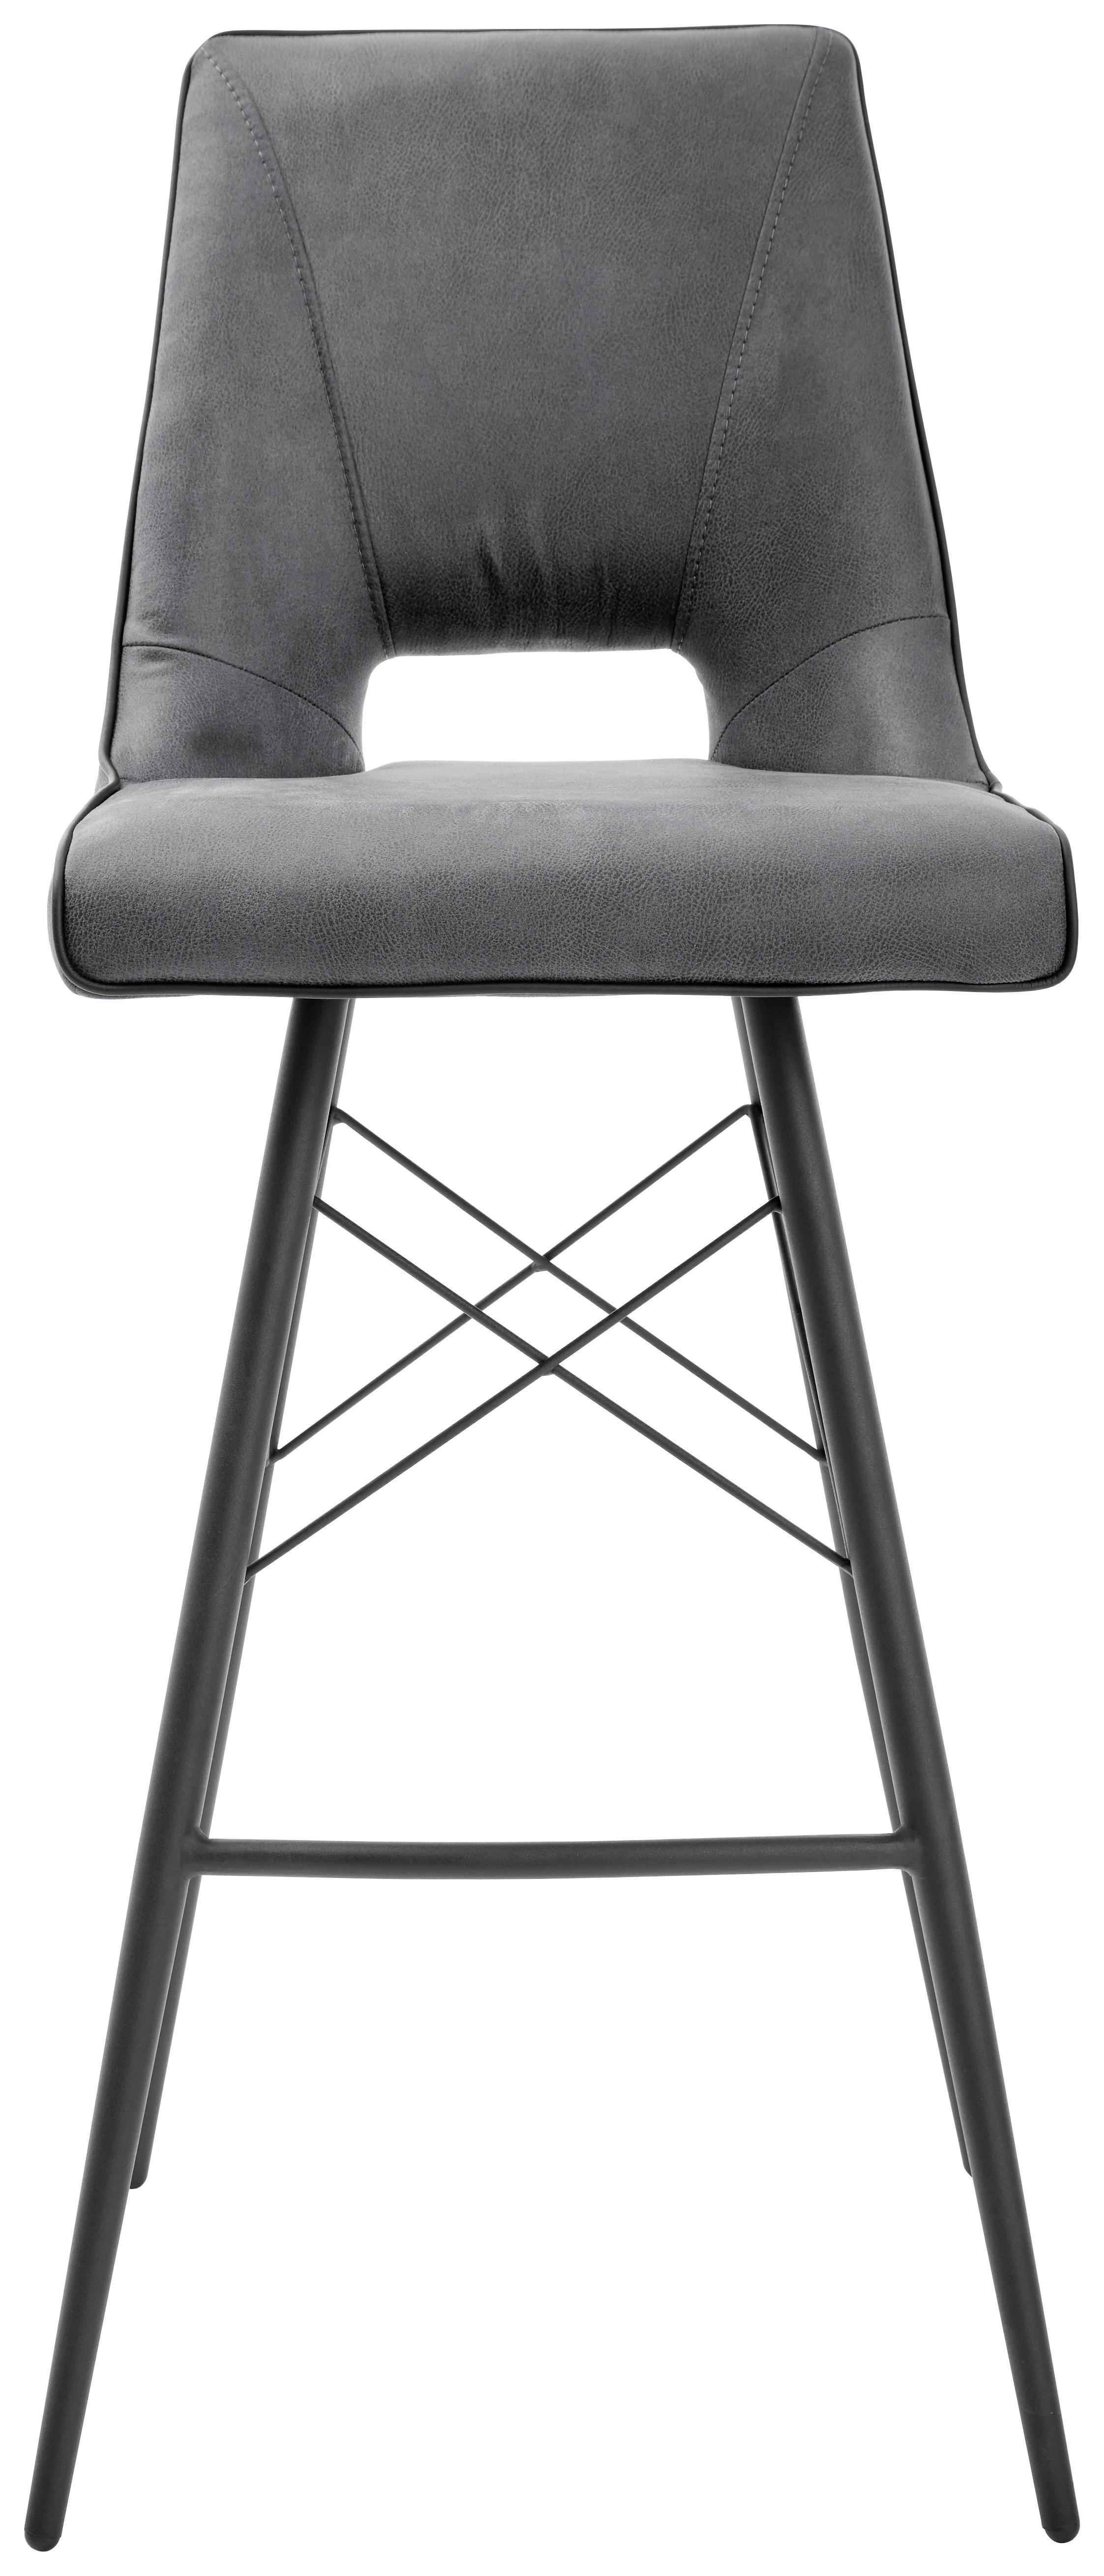 Barski Stol Celina - siva/črna, Moderno, kovina/tekstil (44,5/109,5/51.5cm) - Modern Living